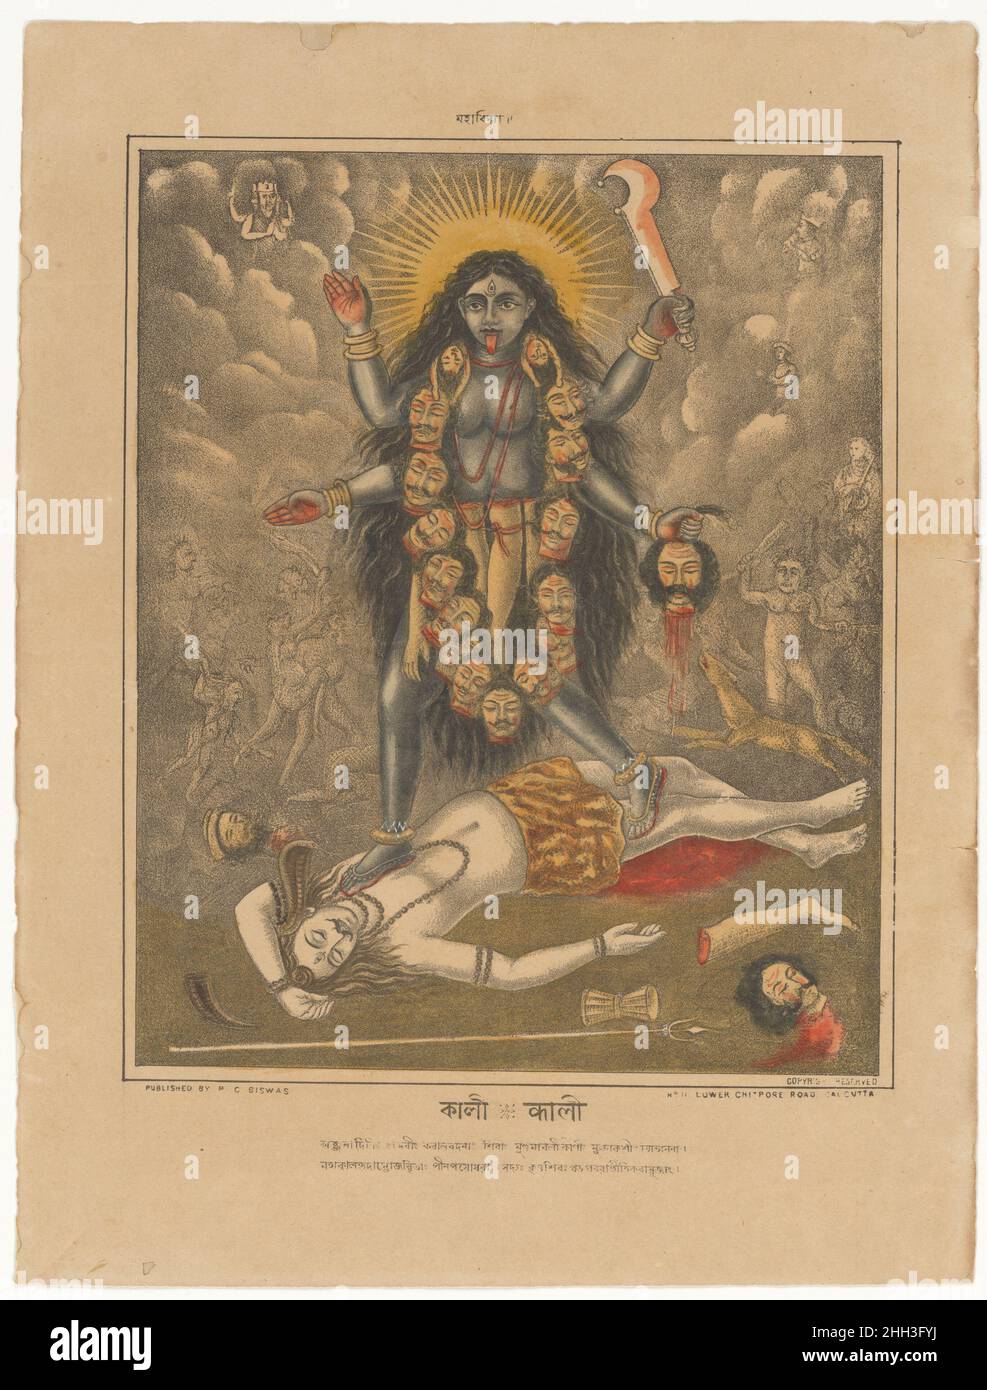 Göttin Kali Ca. 1880–85 Westbengalen, Kalkutta Kali, die höchste Verkörperung weiblicher Macht (shakti), ist eine Manifestation der Göttin Parvati, Shivas liebende Frau, und wird in Bengalen besonders als führende Göttin des Sakta-Kults verehrt. Ihre rachsüchtige und blutige Form verkörpern all das, was die Europäer in Indien in der hinduistischen Gesellschaft am meisten fürchten – und missverstehen –. Kali verkörpert Macht über die Zeit und wird oft als der Zerstörer der Zeit beschrieben, der die natürlichen Kräfte der Zerstörung verkörpert. Sie wird in der Regel auf der niedergewurften Figur ihres Ehemannes Shiva dargestellt, der hier zu sehen ist Stockfoto